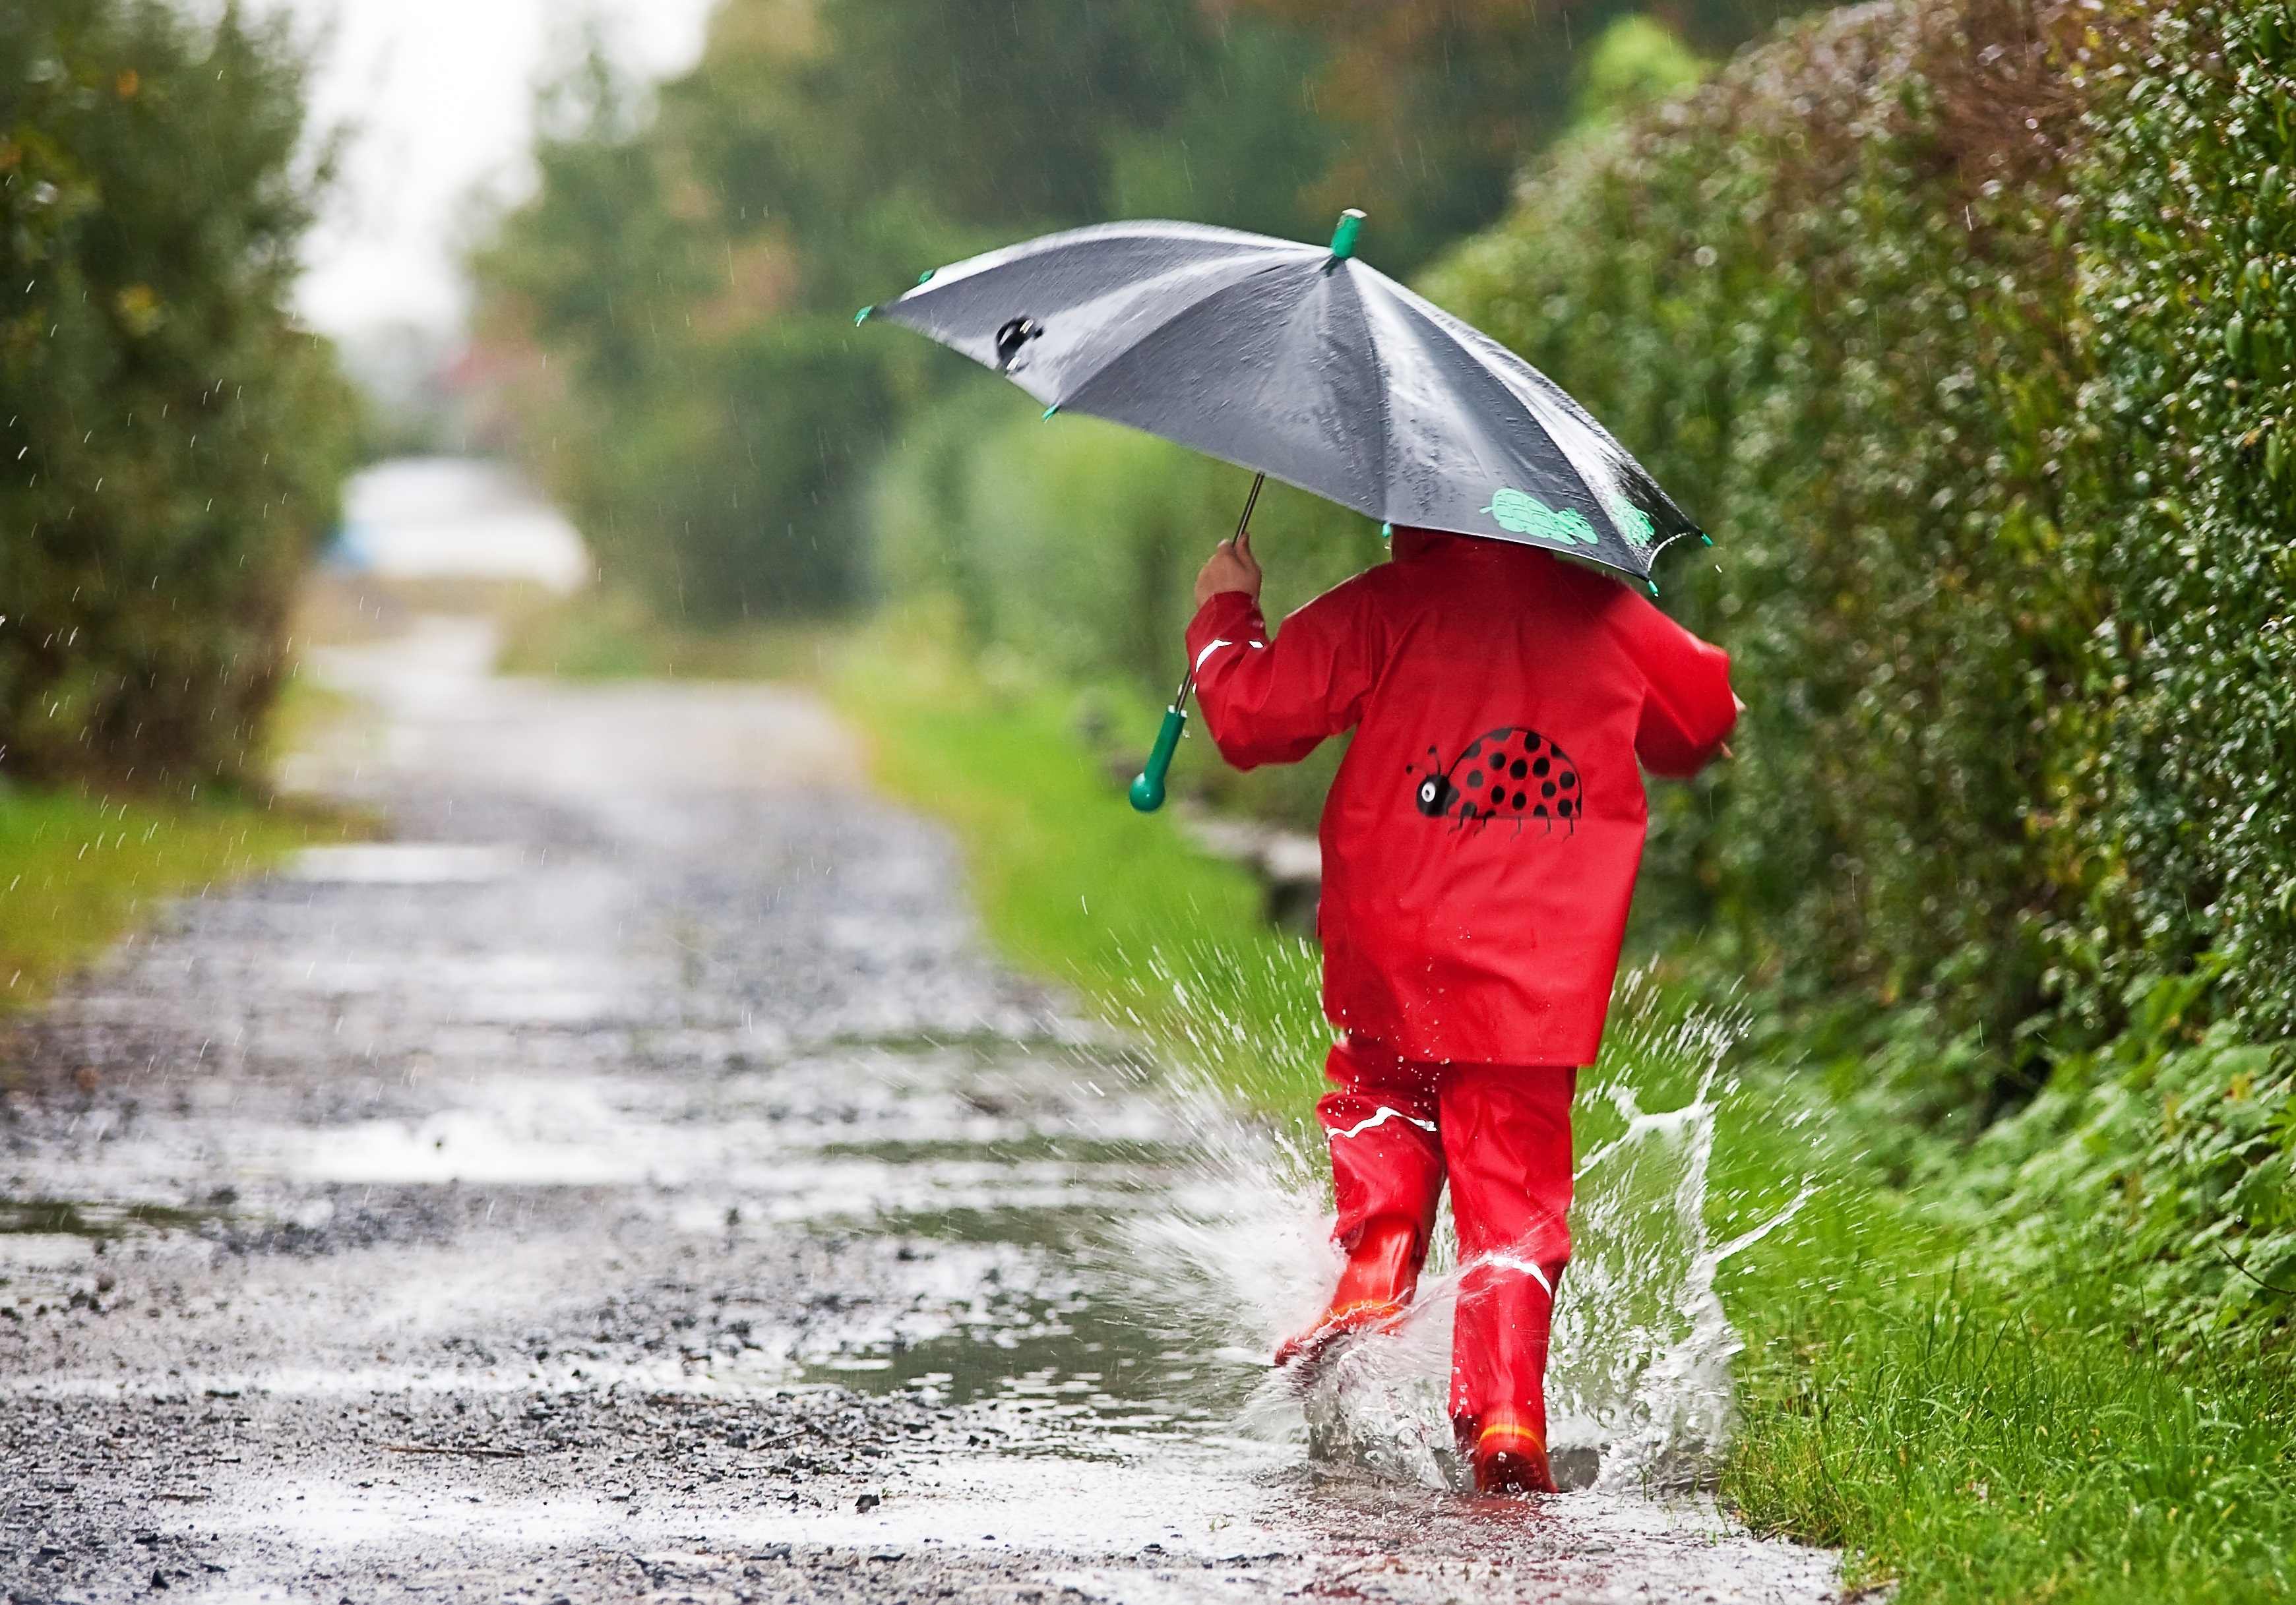 Тема дождливая погода. Дождливое лето. Дождливый день. Зонтик для детей. Дети под зонтом.